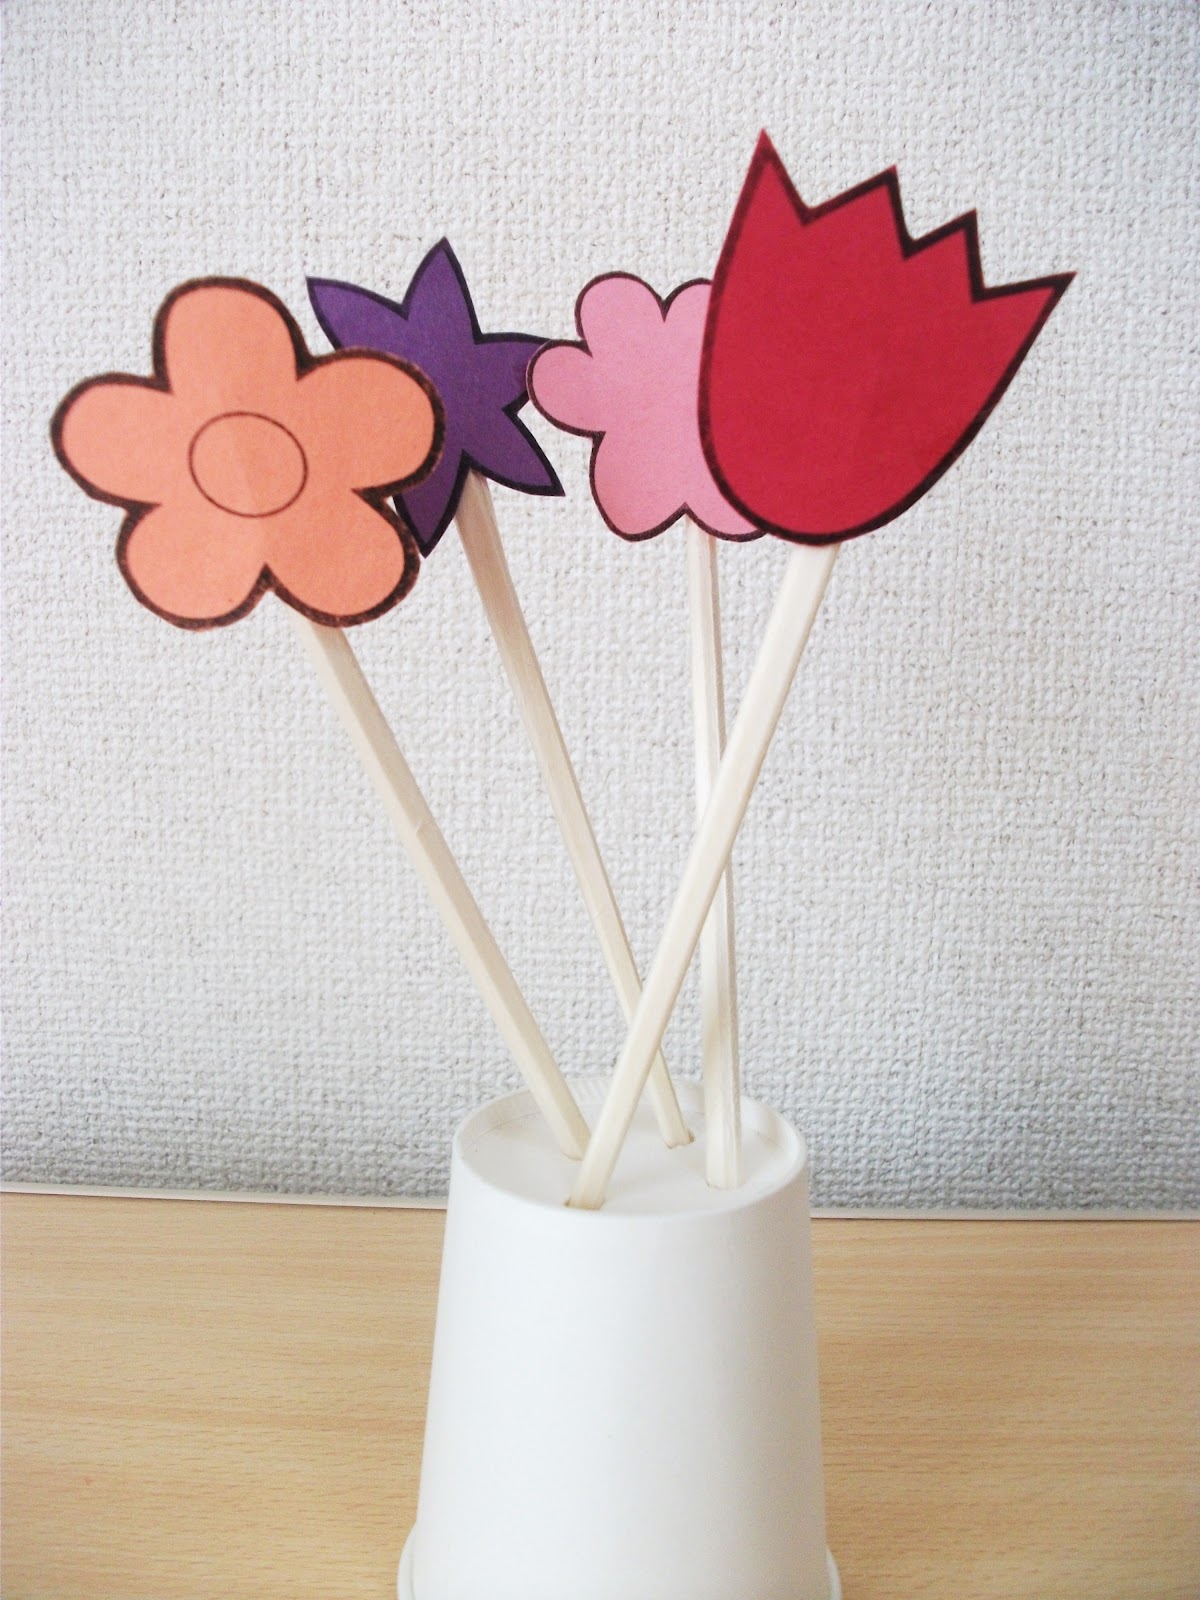 Spring Flowers and Vase Chopsticks Craft | Preschool Crafts for Kids